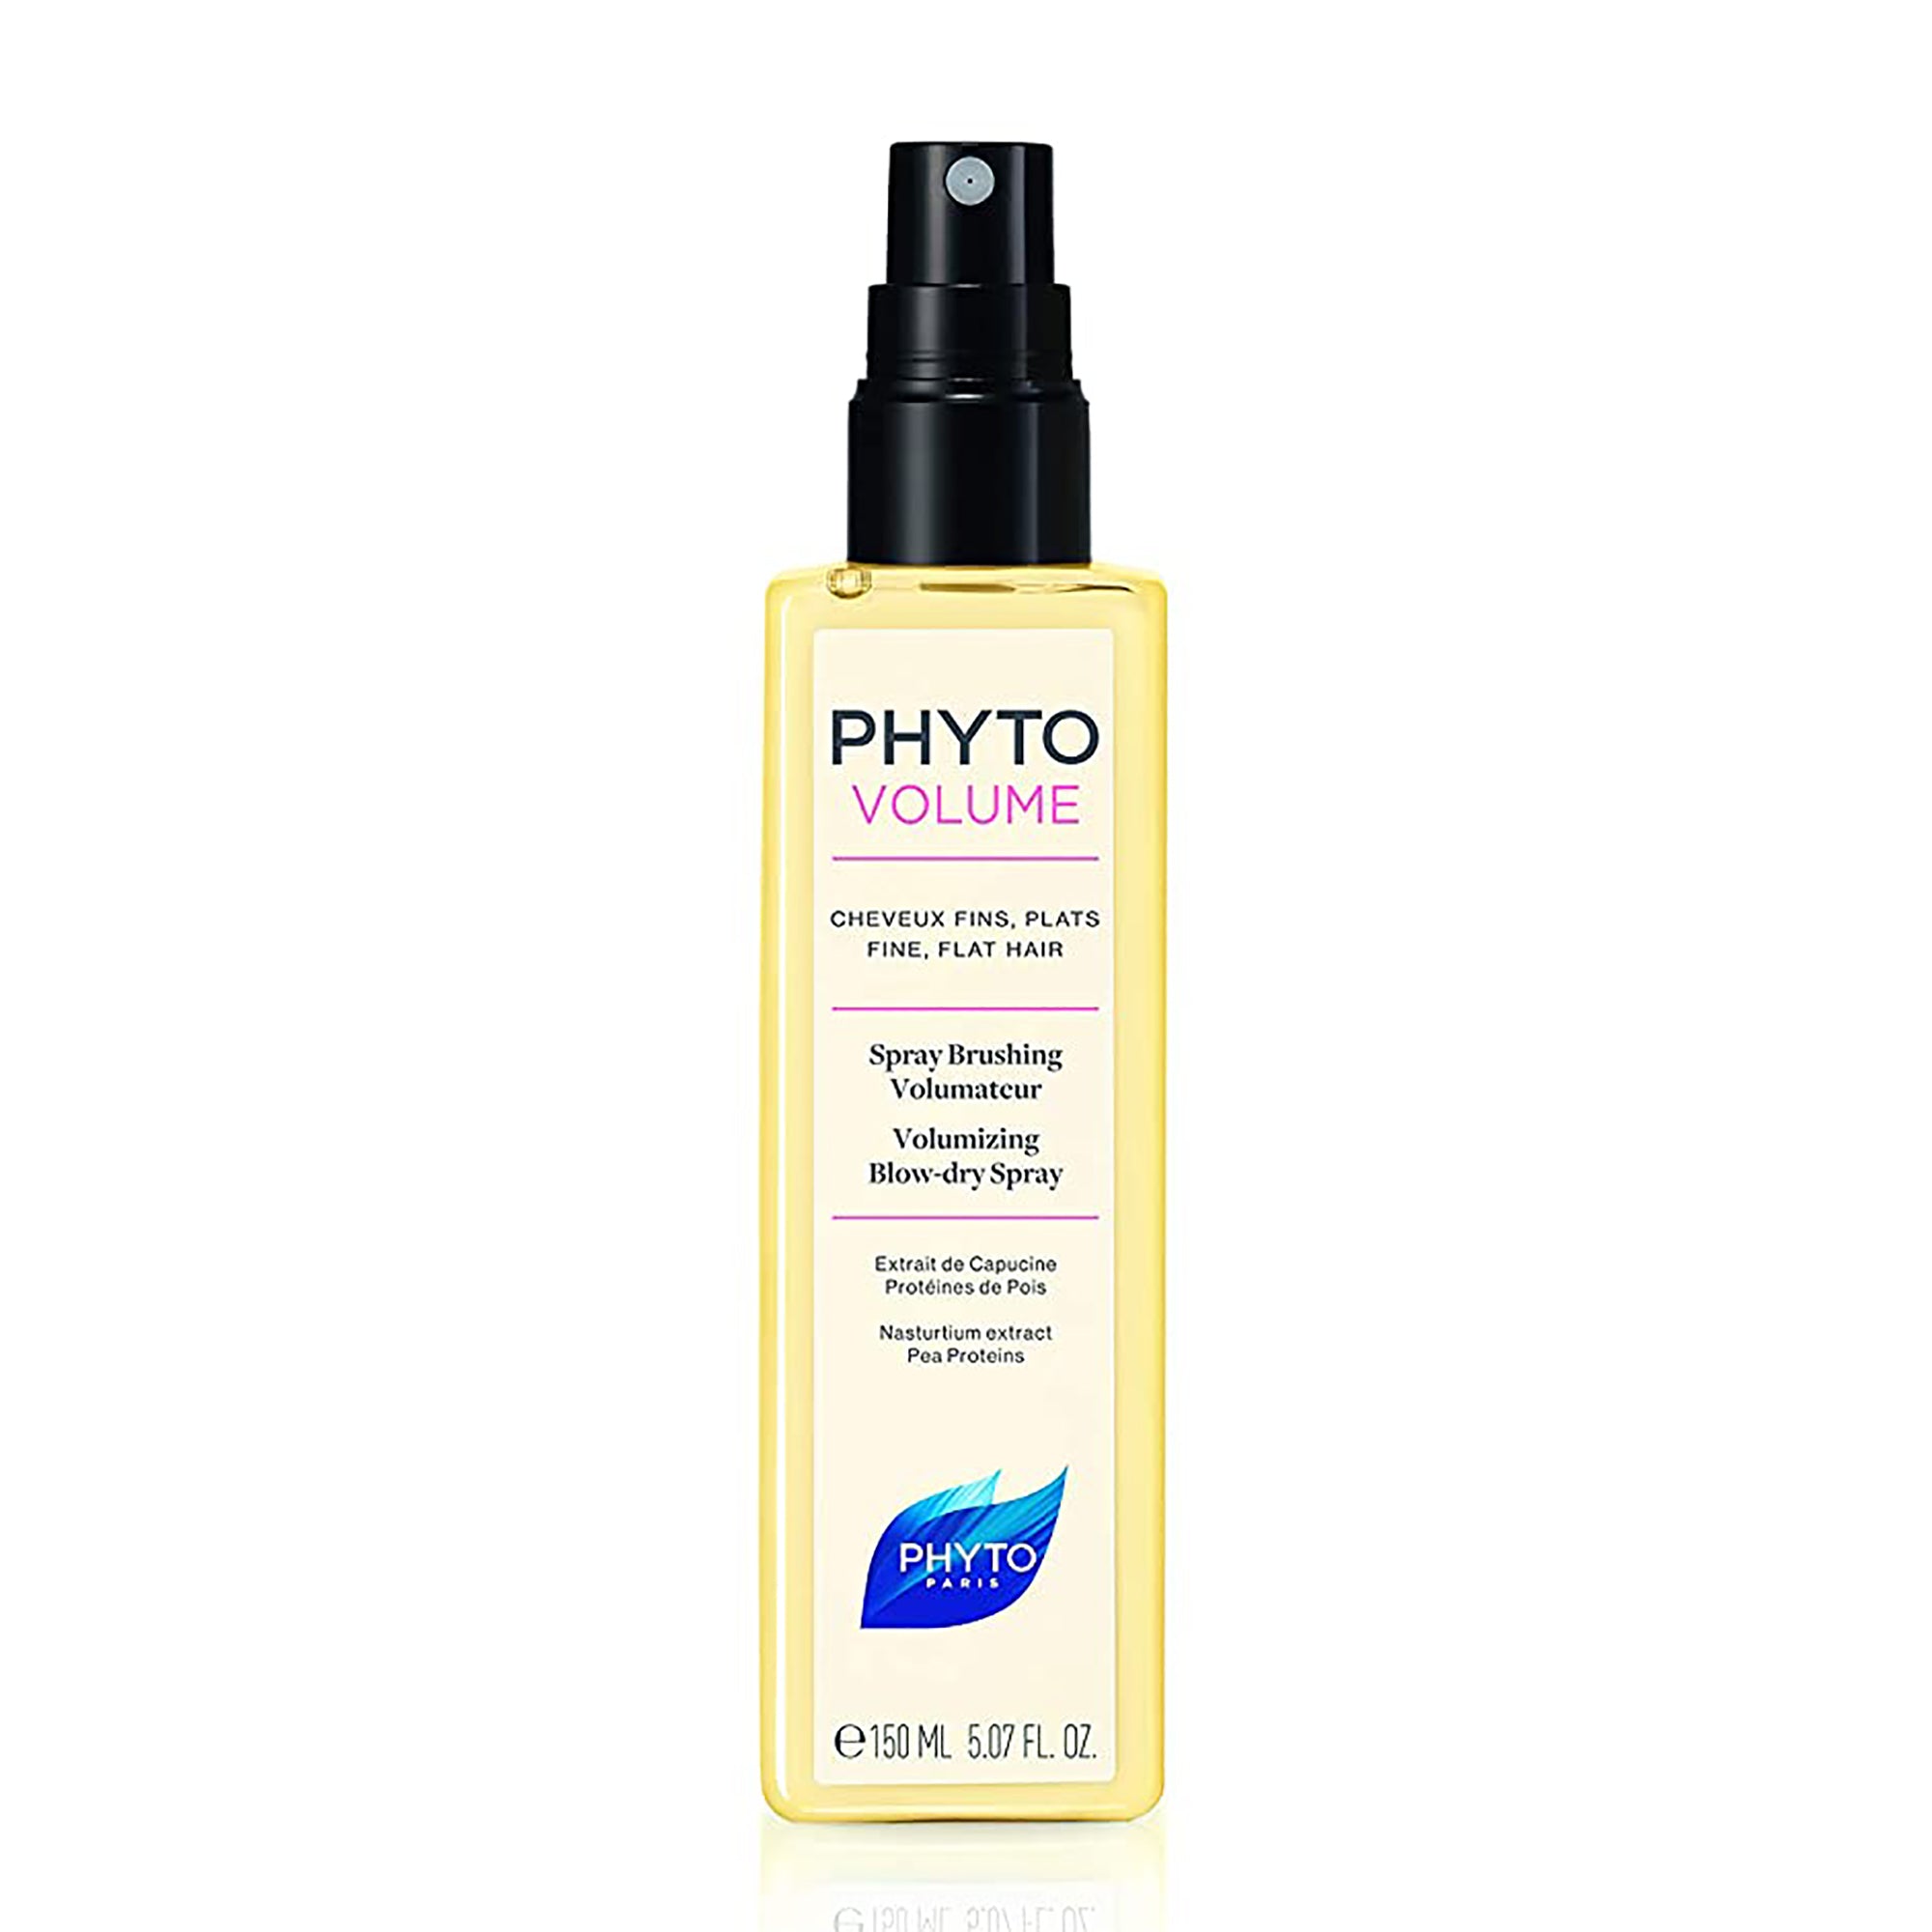 Phyto Phytovolume Volumizing Blow-Dry Spray / 5.07